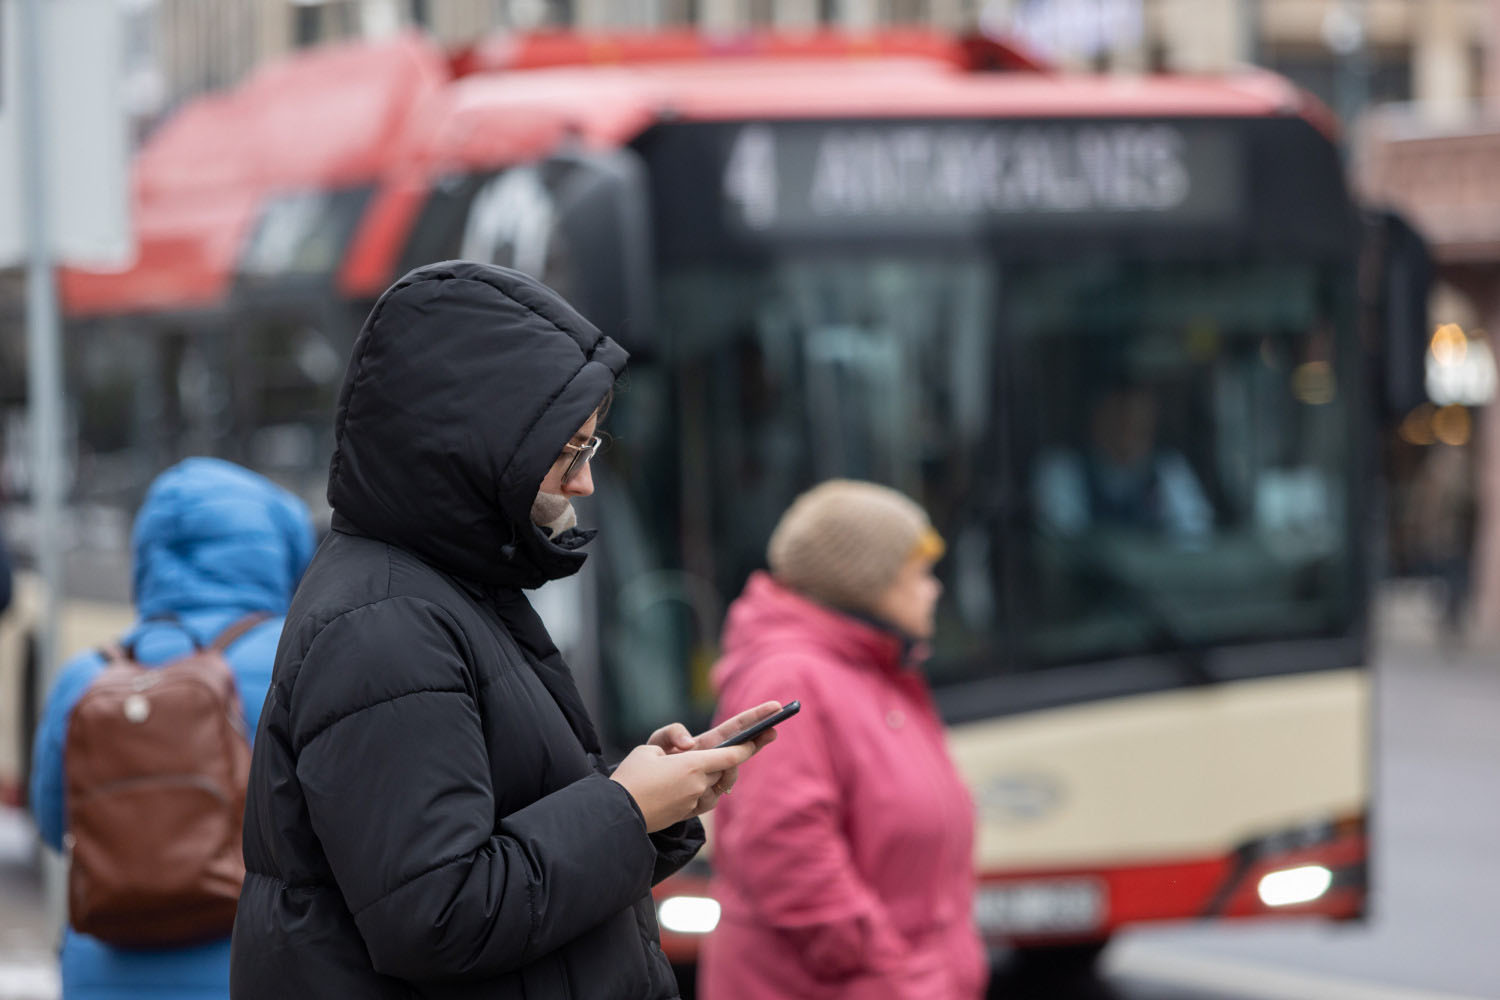 Kobieta na telefonie komórkowym sprawdza rozkład autobusów.